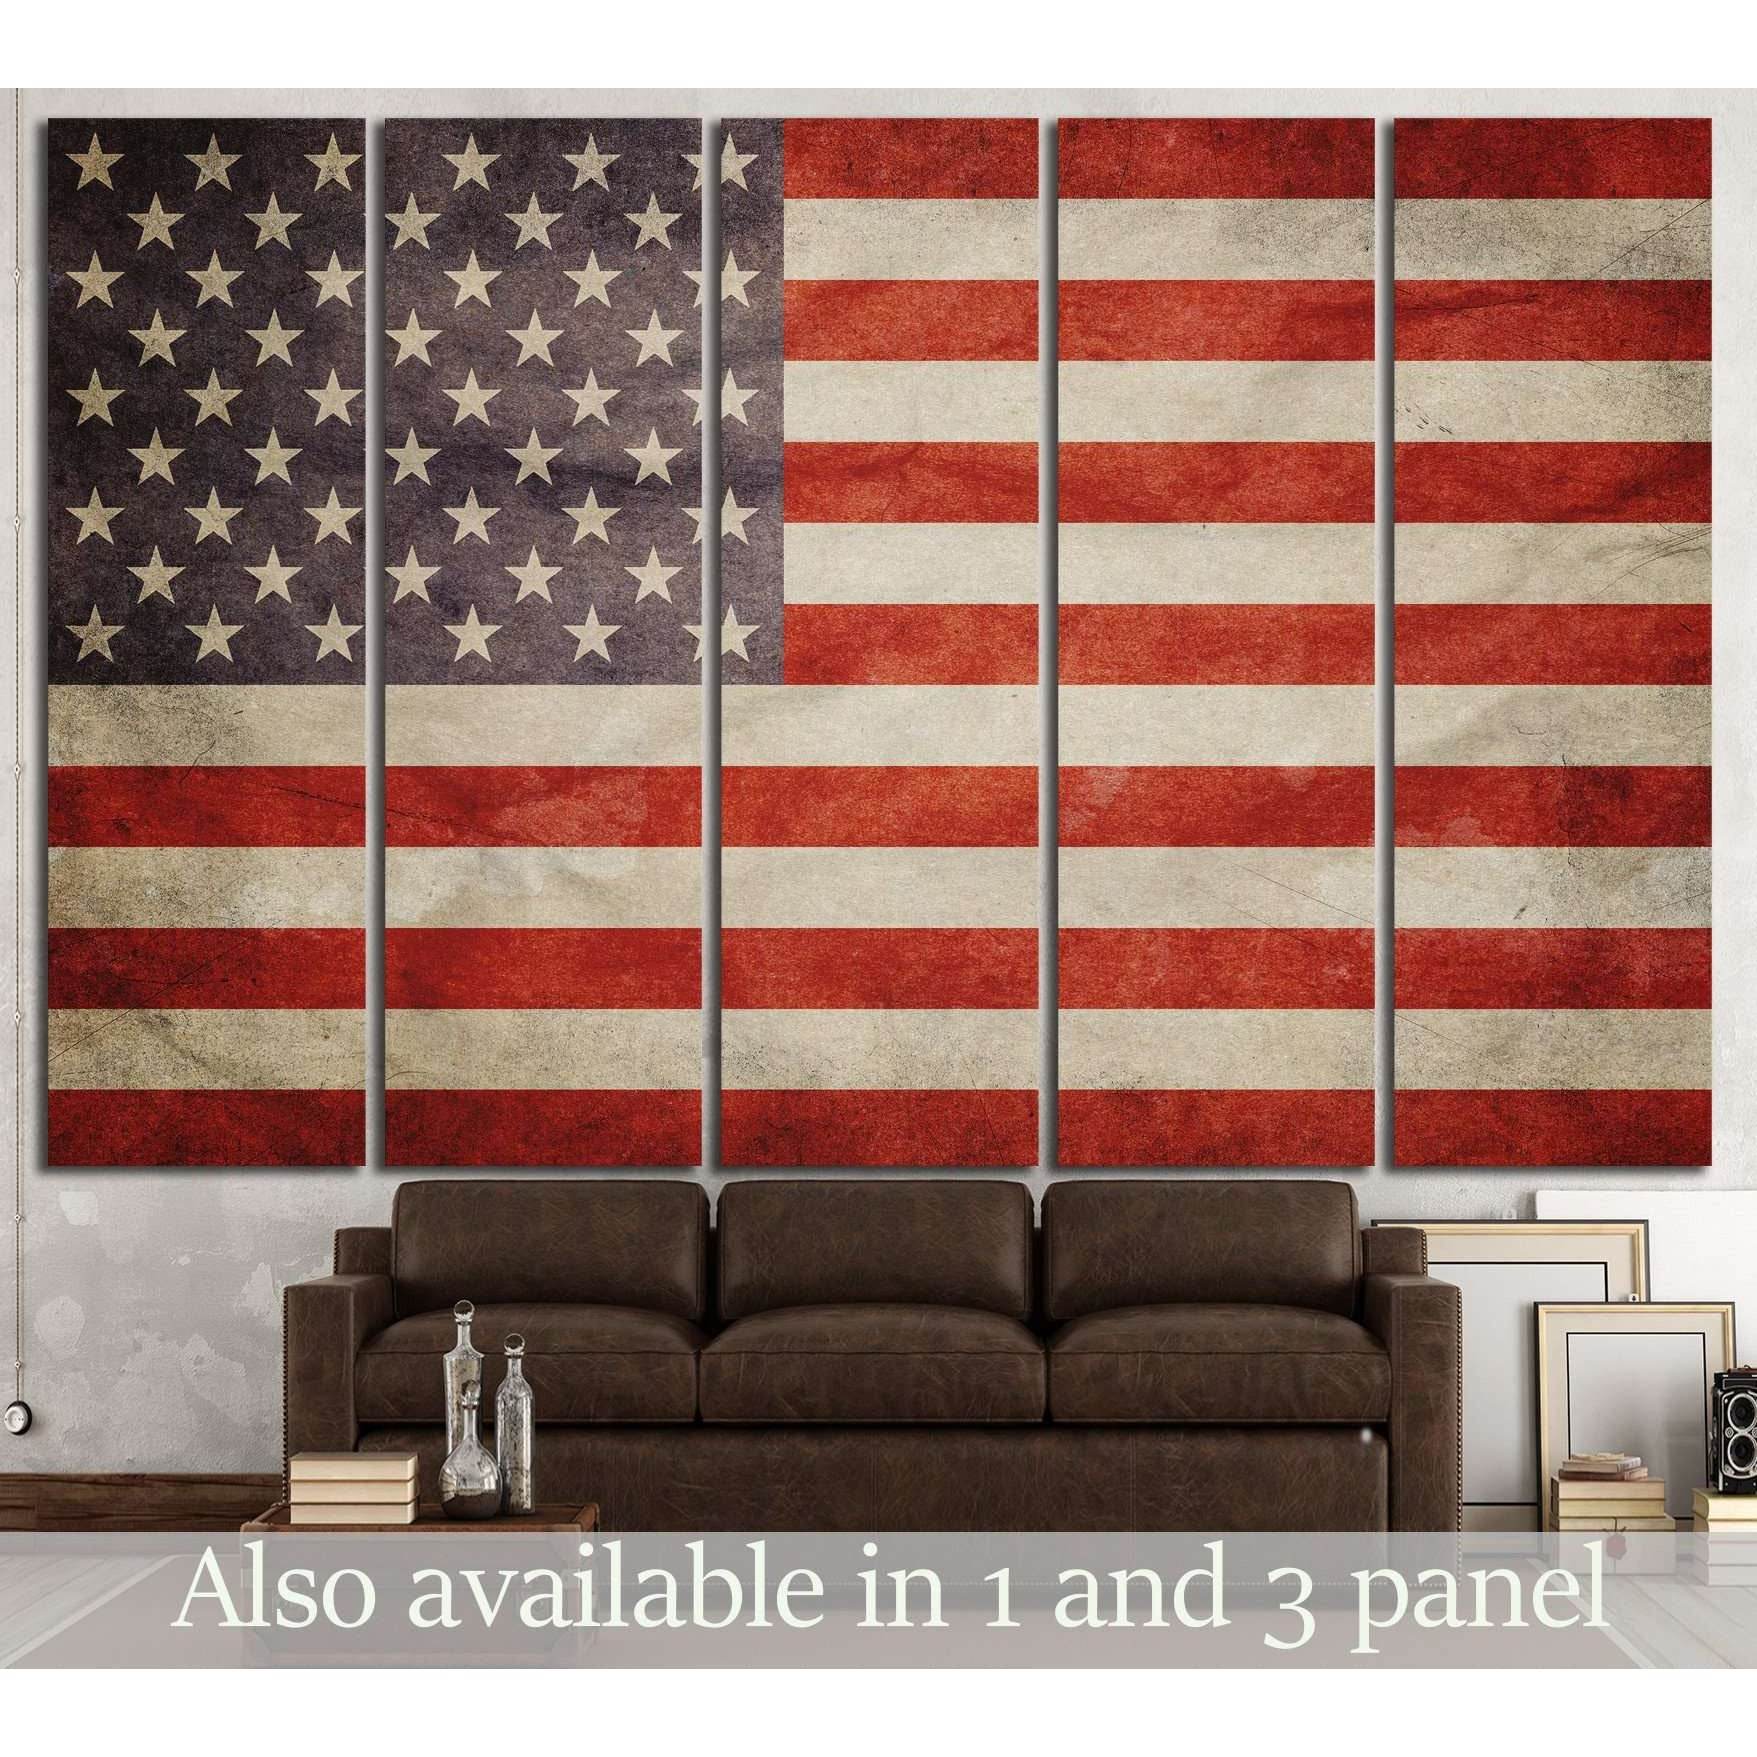 USA Flag №672 Ready to Hang Canvas Print